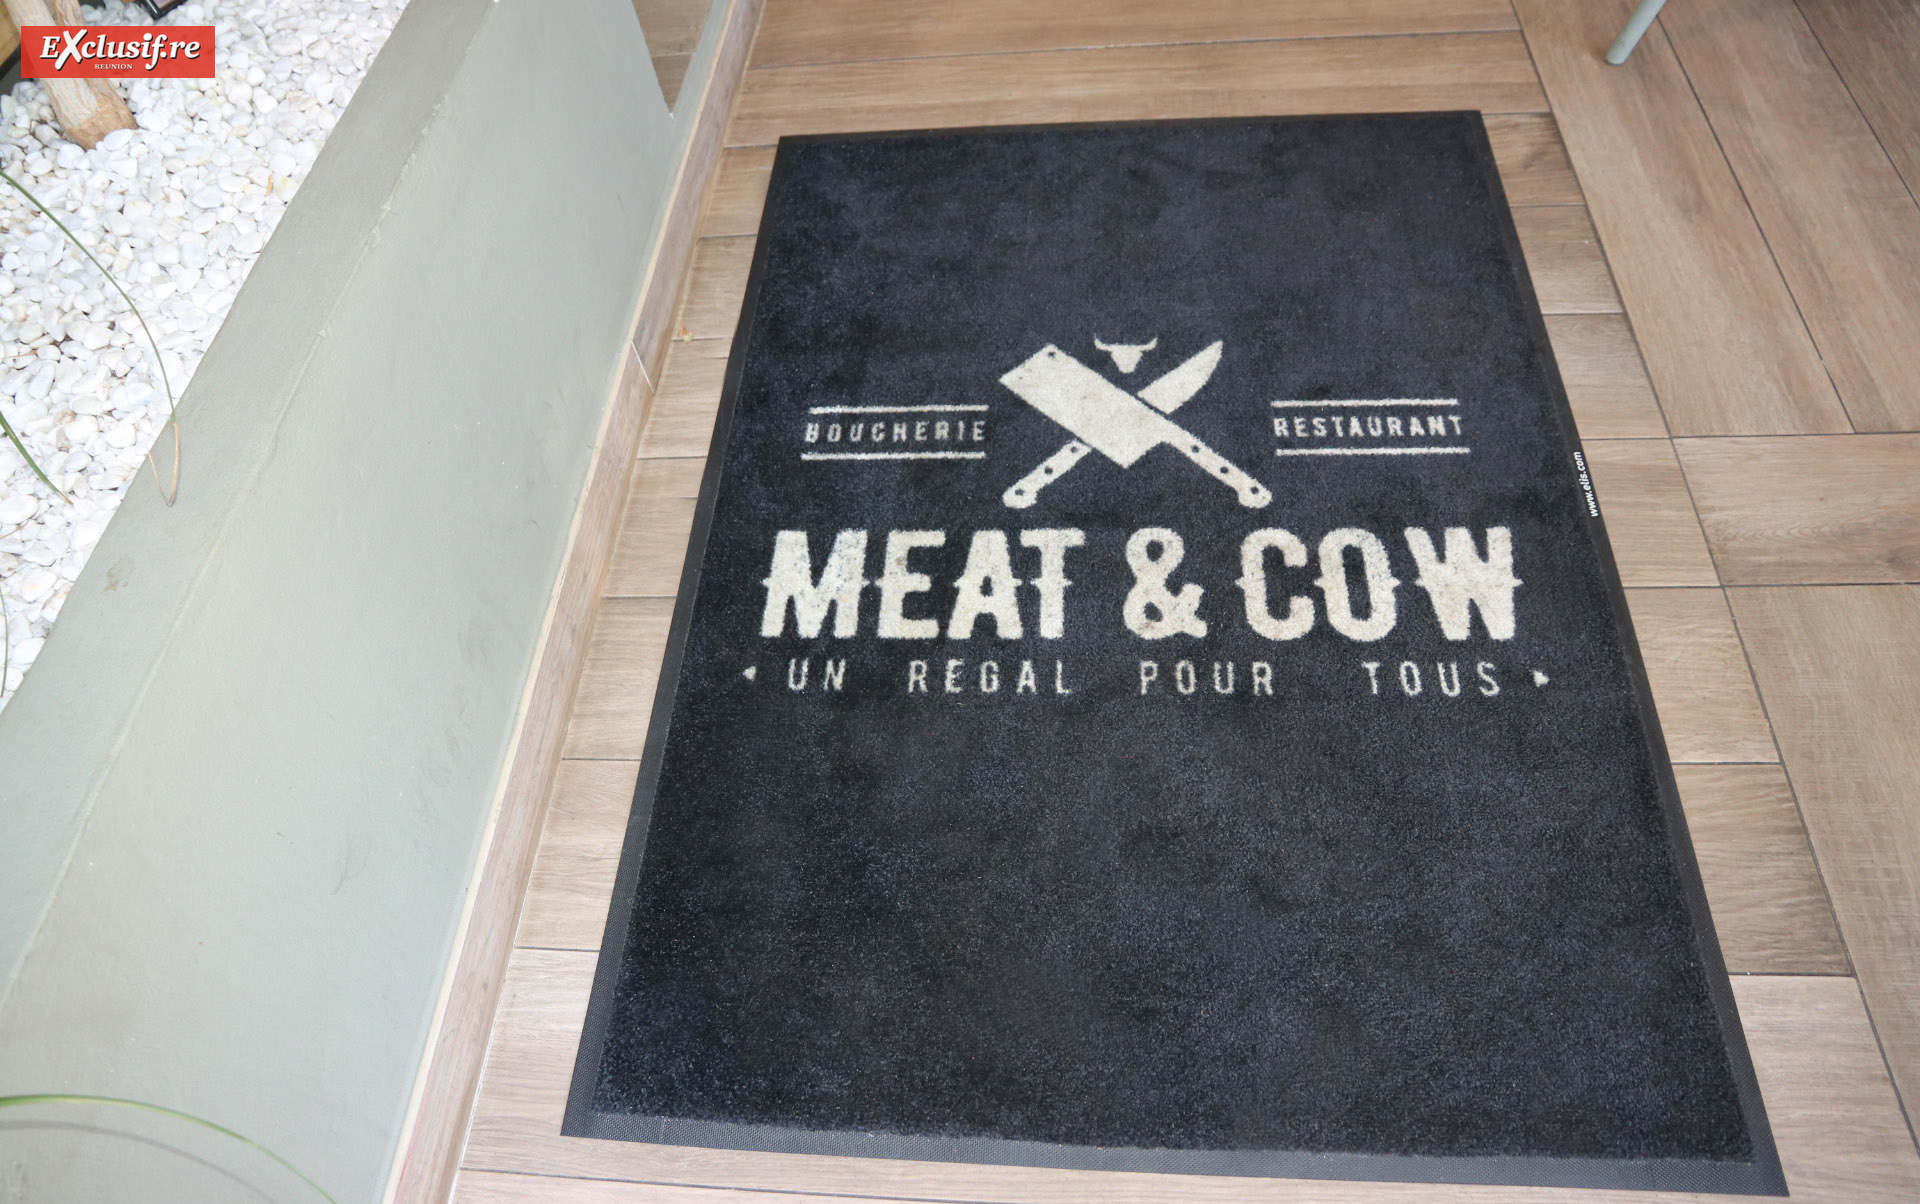 Meat & Cow à Saint-Denis: nouvelle adresse branchée